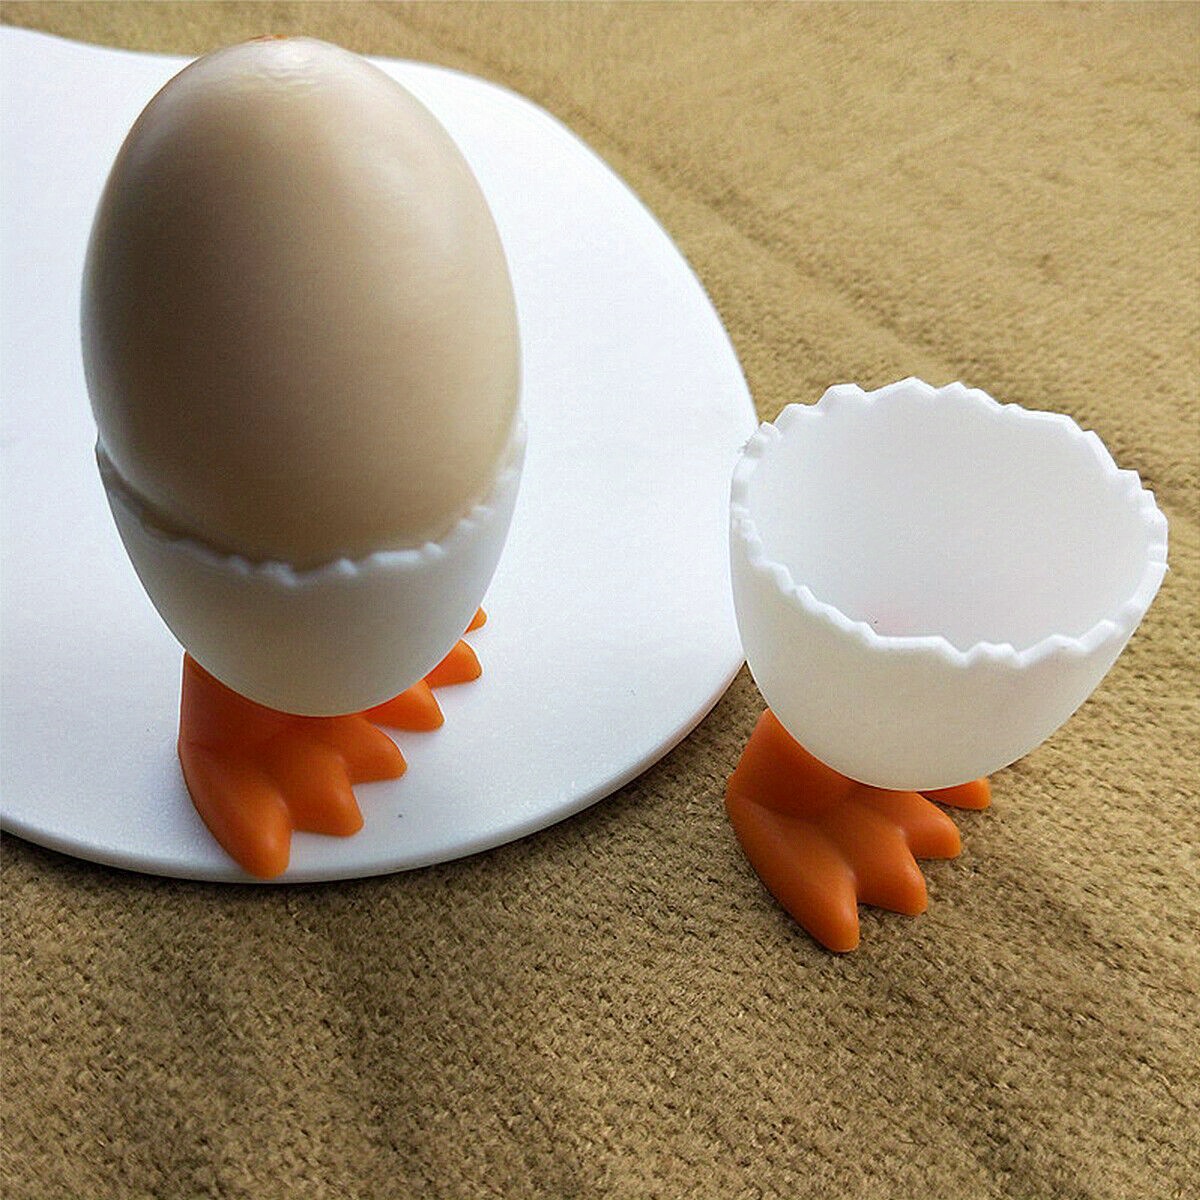 Egguins 3-in-1 Cook, Store and Serve Egg Holder, Penguin-Shaped Boiled Egg  Cooker for Making Soft or Hard Boiled Eggs - Crazy Sales